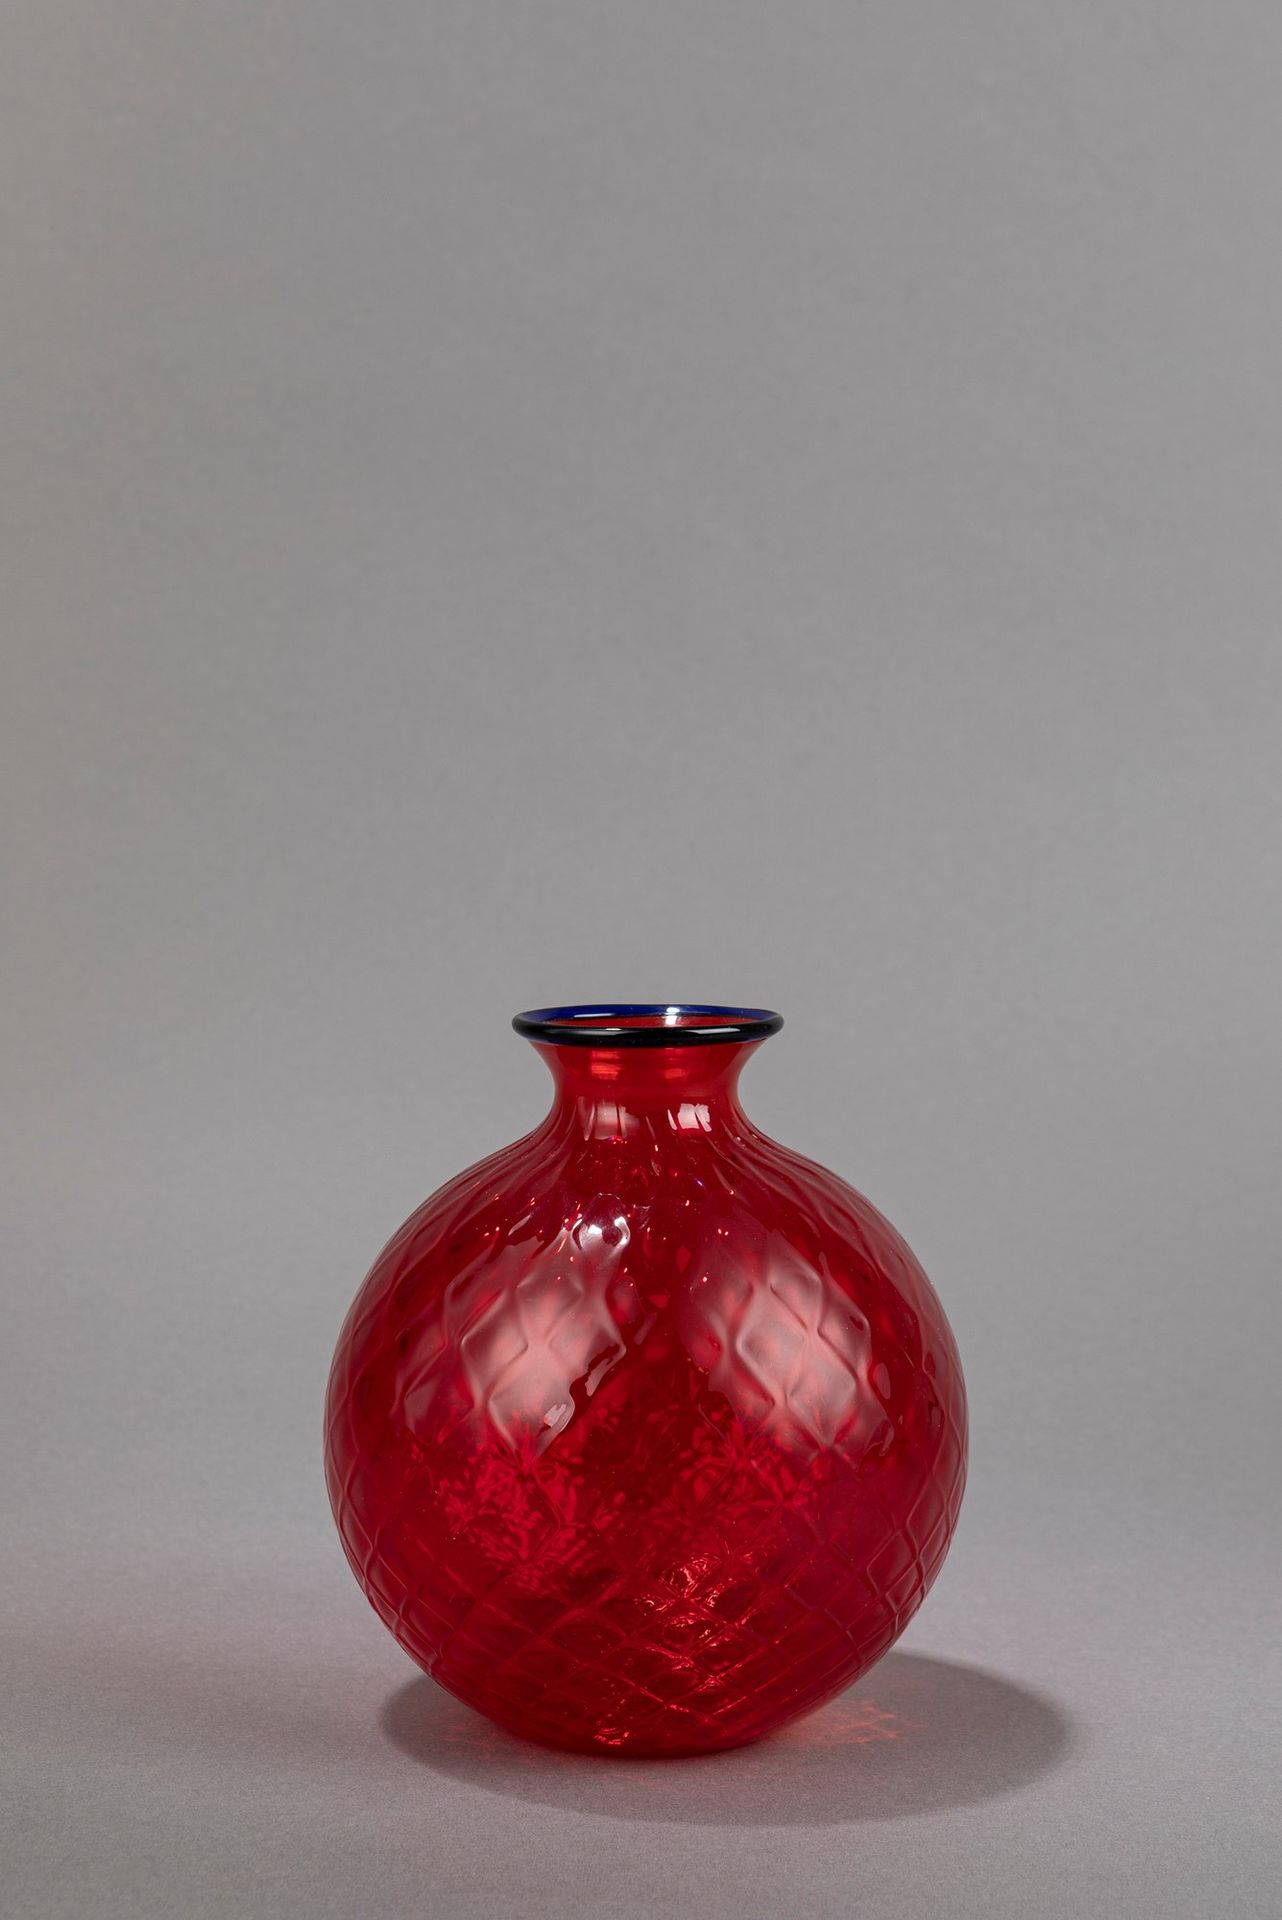 VENINI Balloton, 2004

h 24,5 x diam 21,5 cm
vidrio rojo soplado trabajado con l&hellip;